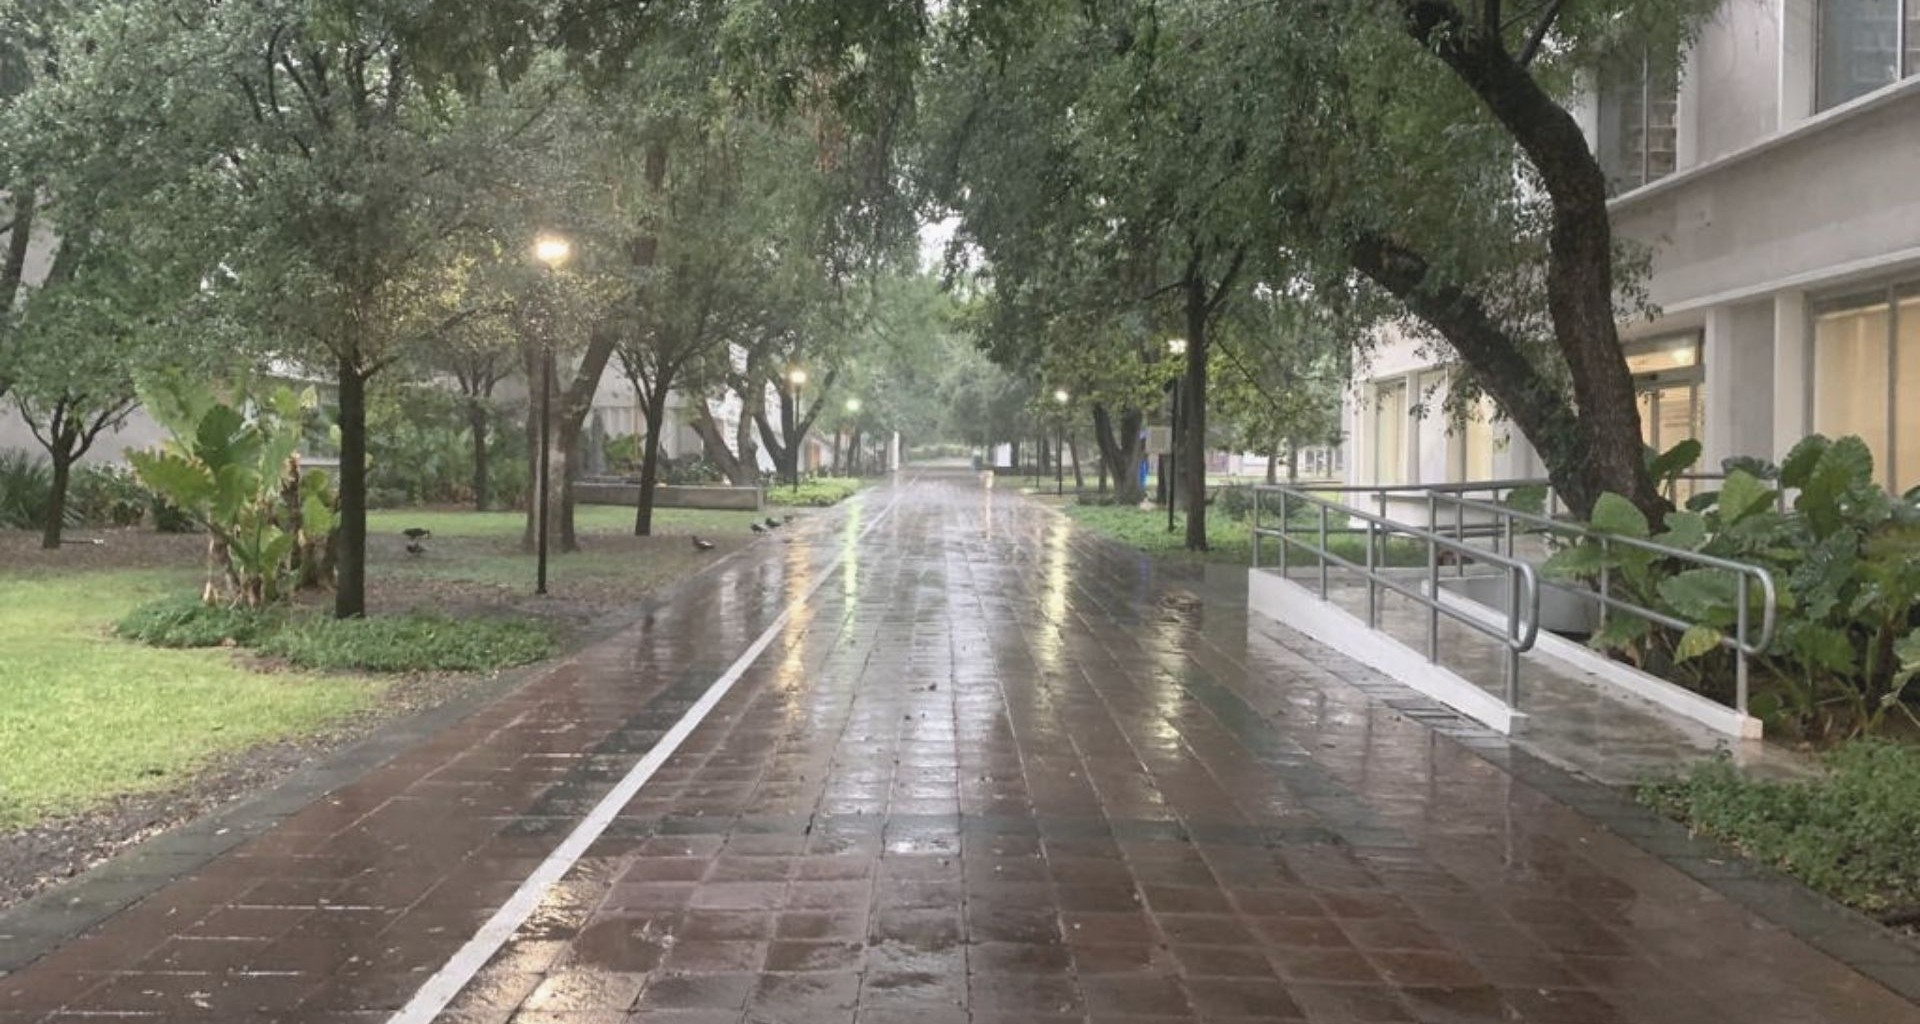 Suspende Tec en Monterrey actividades por lluvias